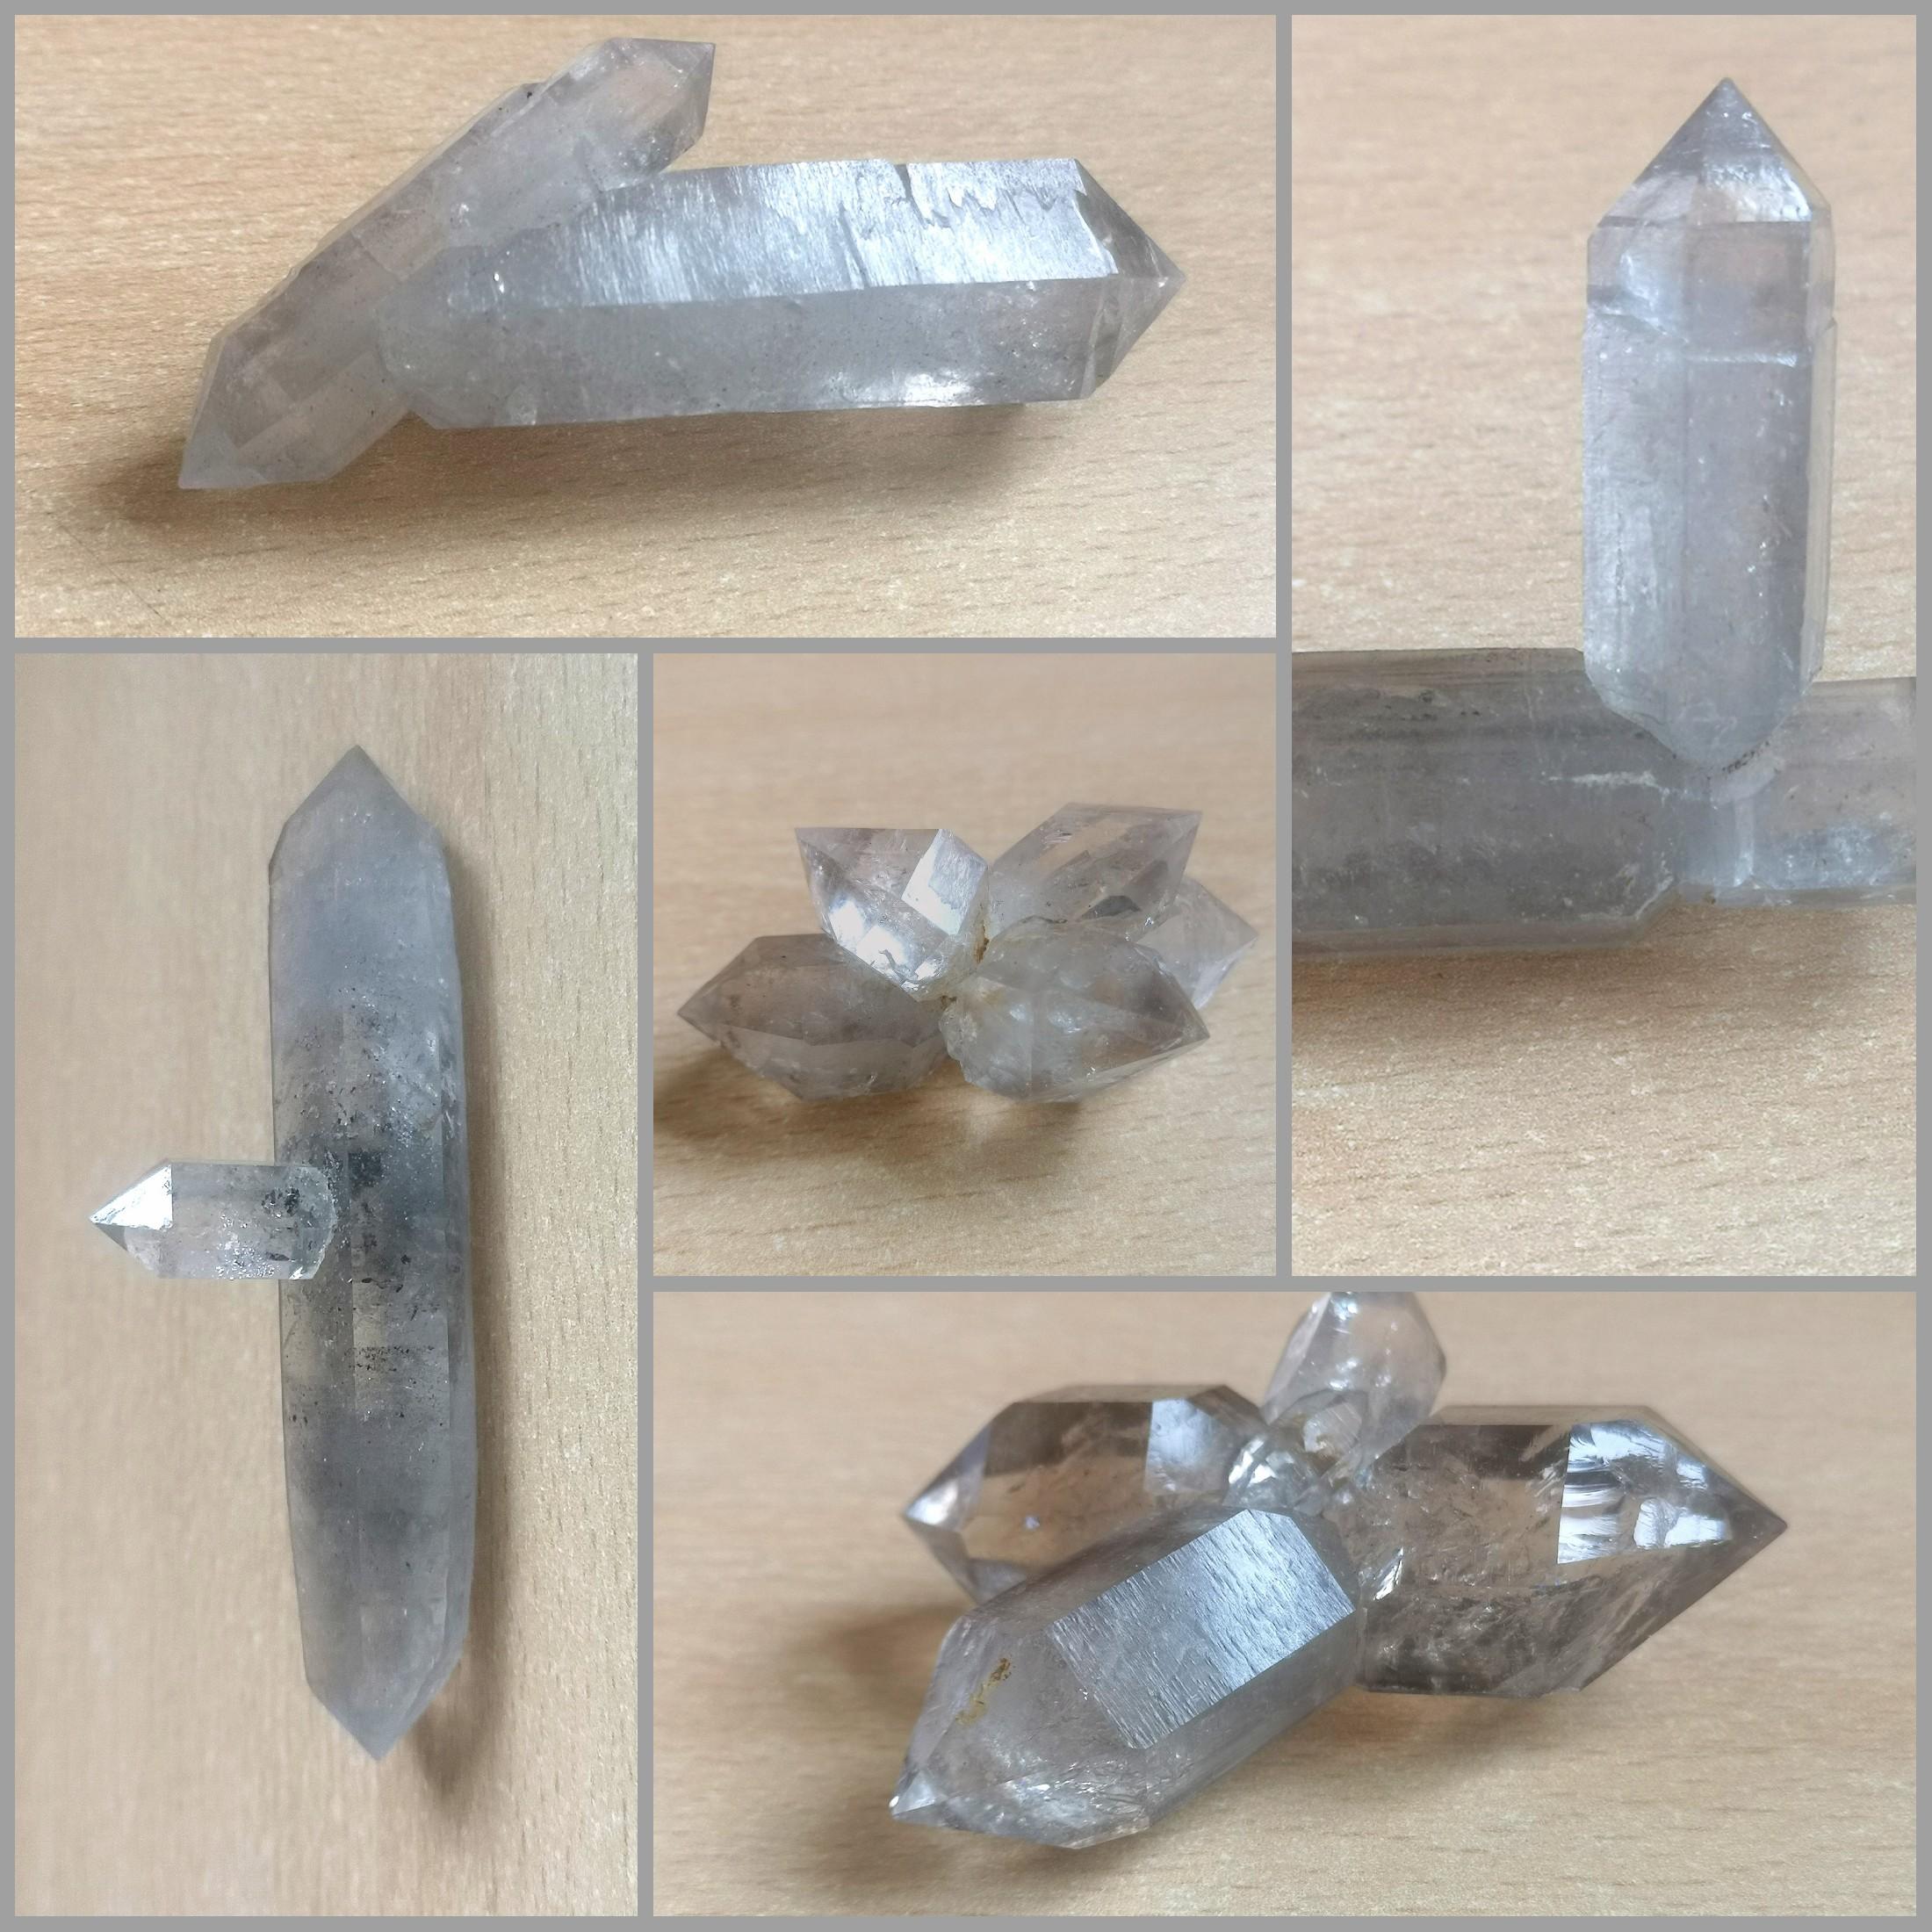 和多数浮生水晶类似,云贵水晶中以单晶为主,偶尔出产无规则穿插双晶或